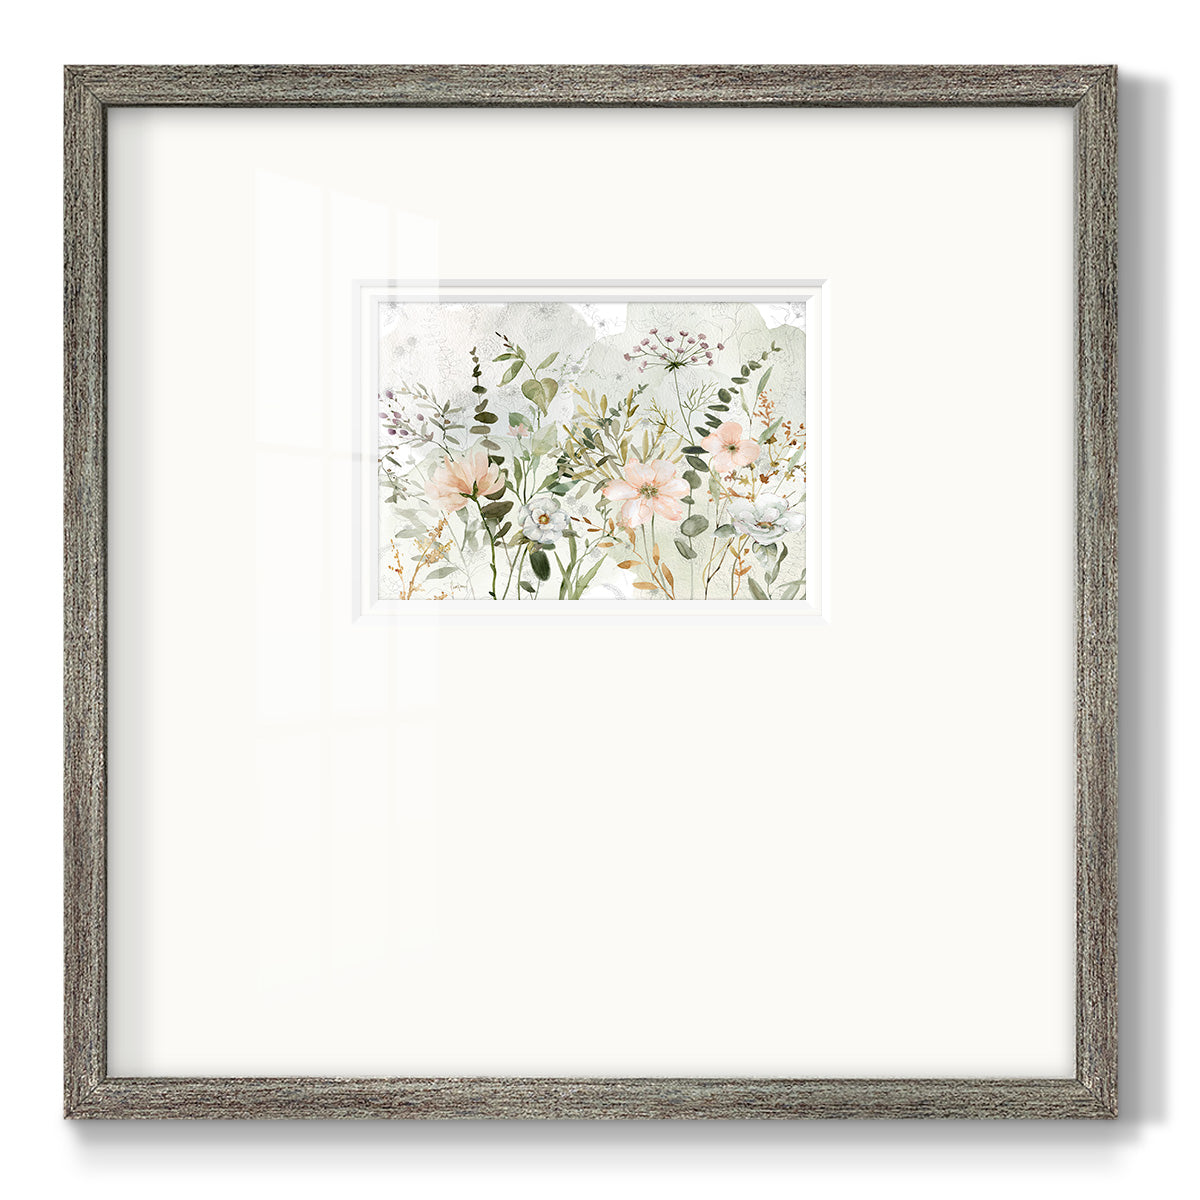 Botanical Sketchbook Premium Framed Print Double Matboard